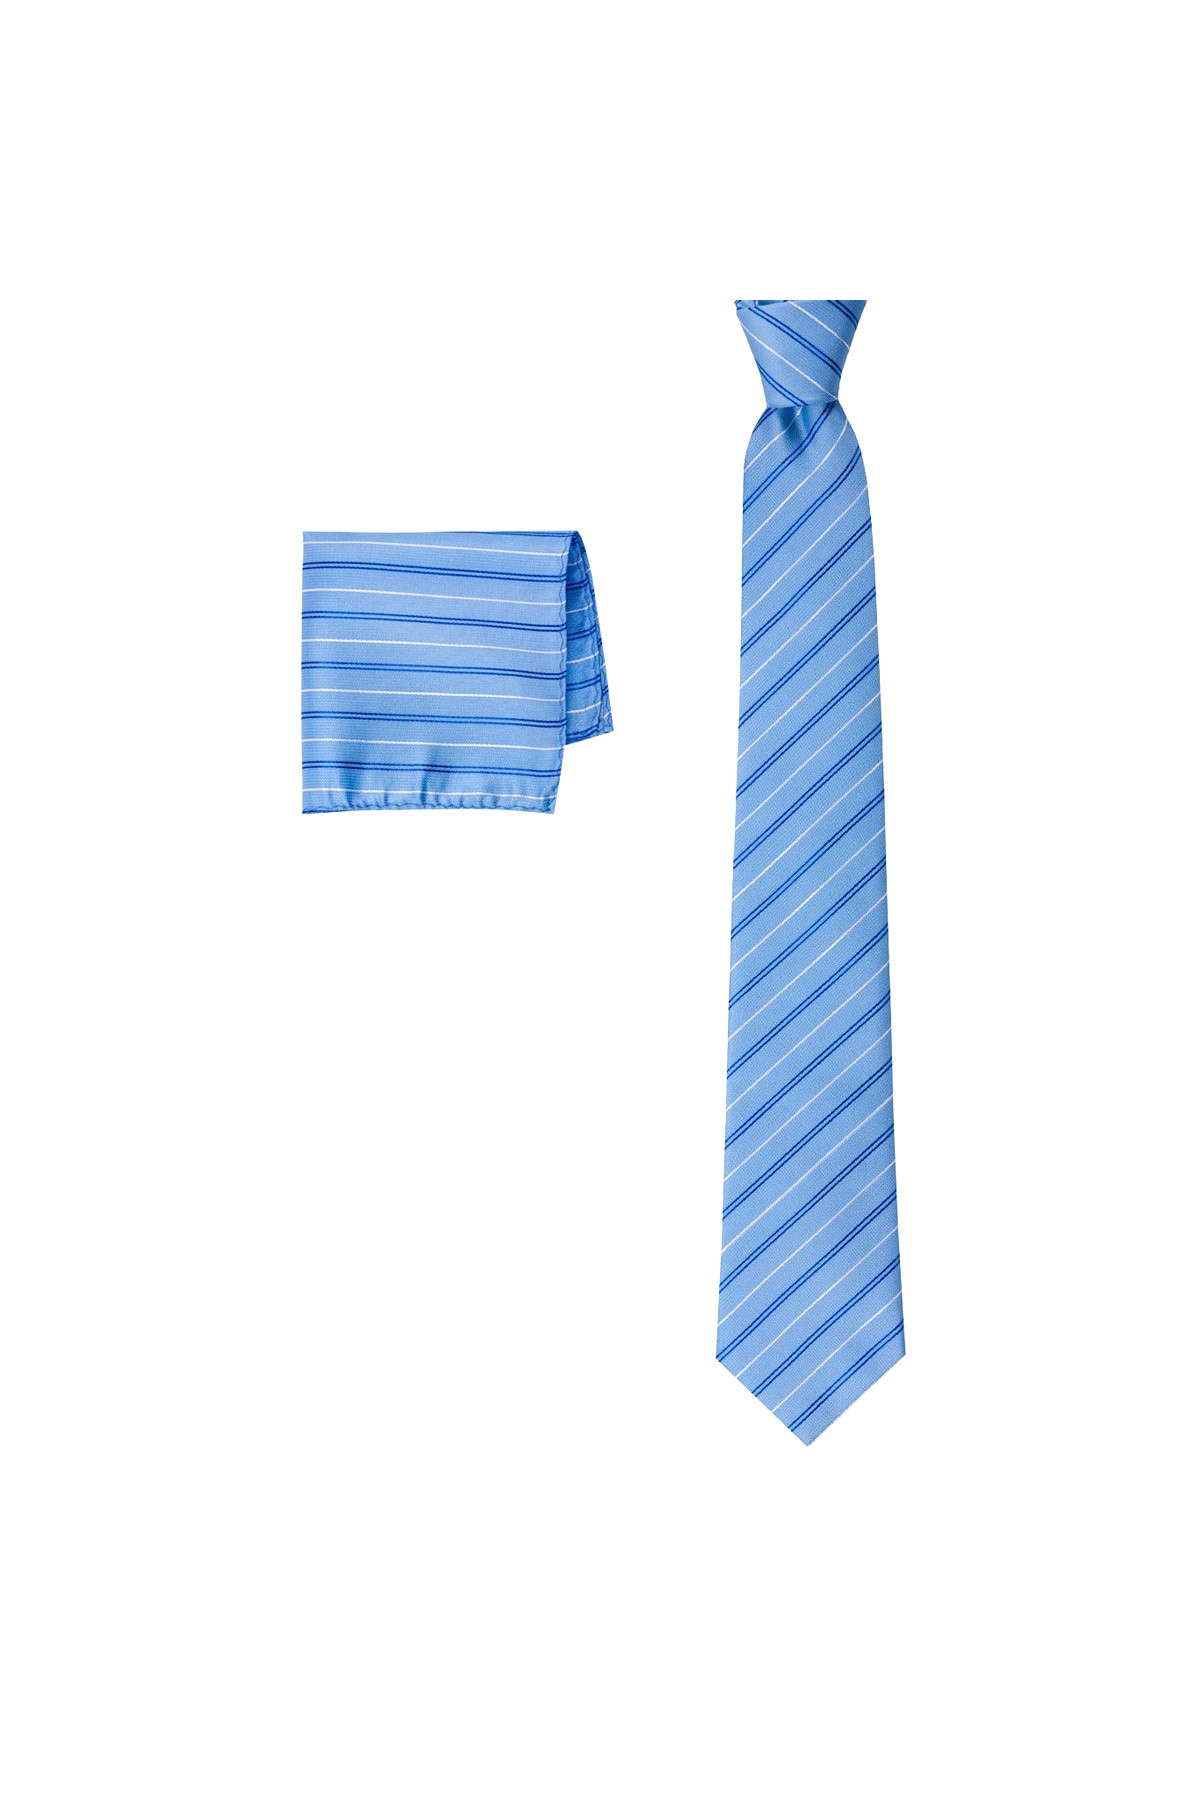 İnce çizgili 8 cm genişliğinde mendilli klasik kravat